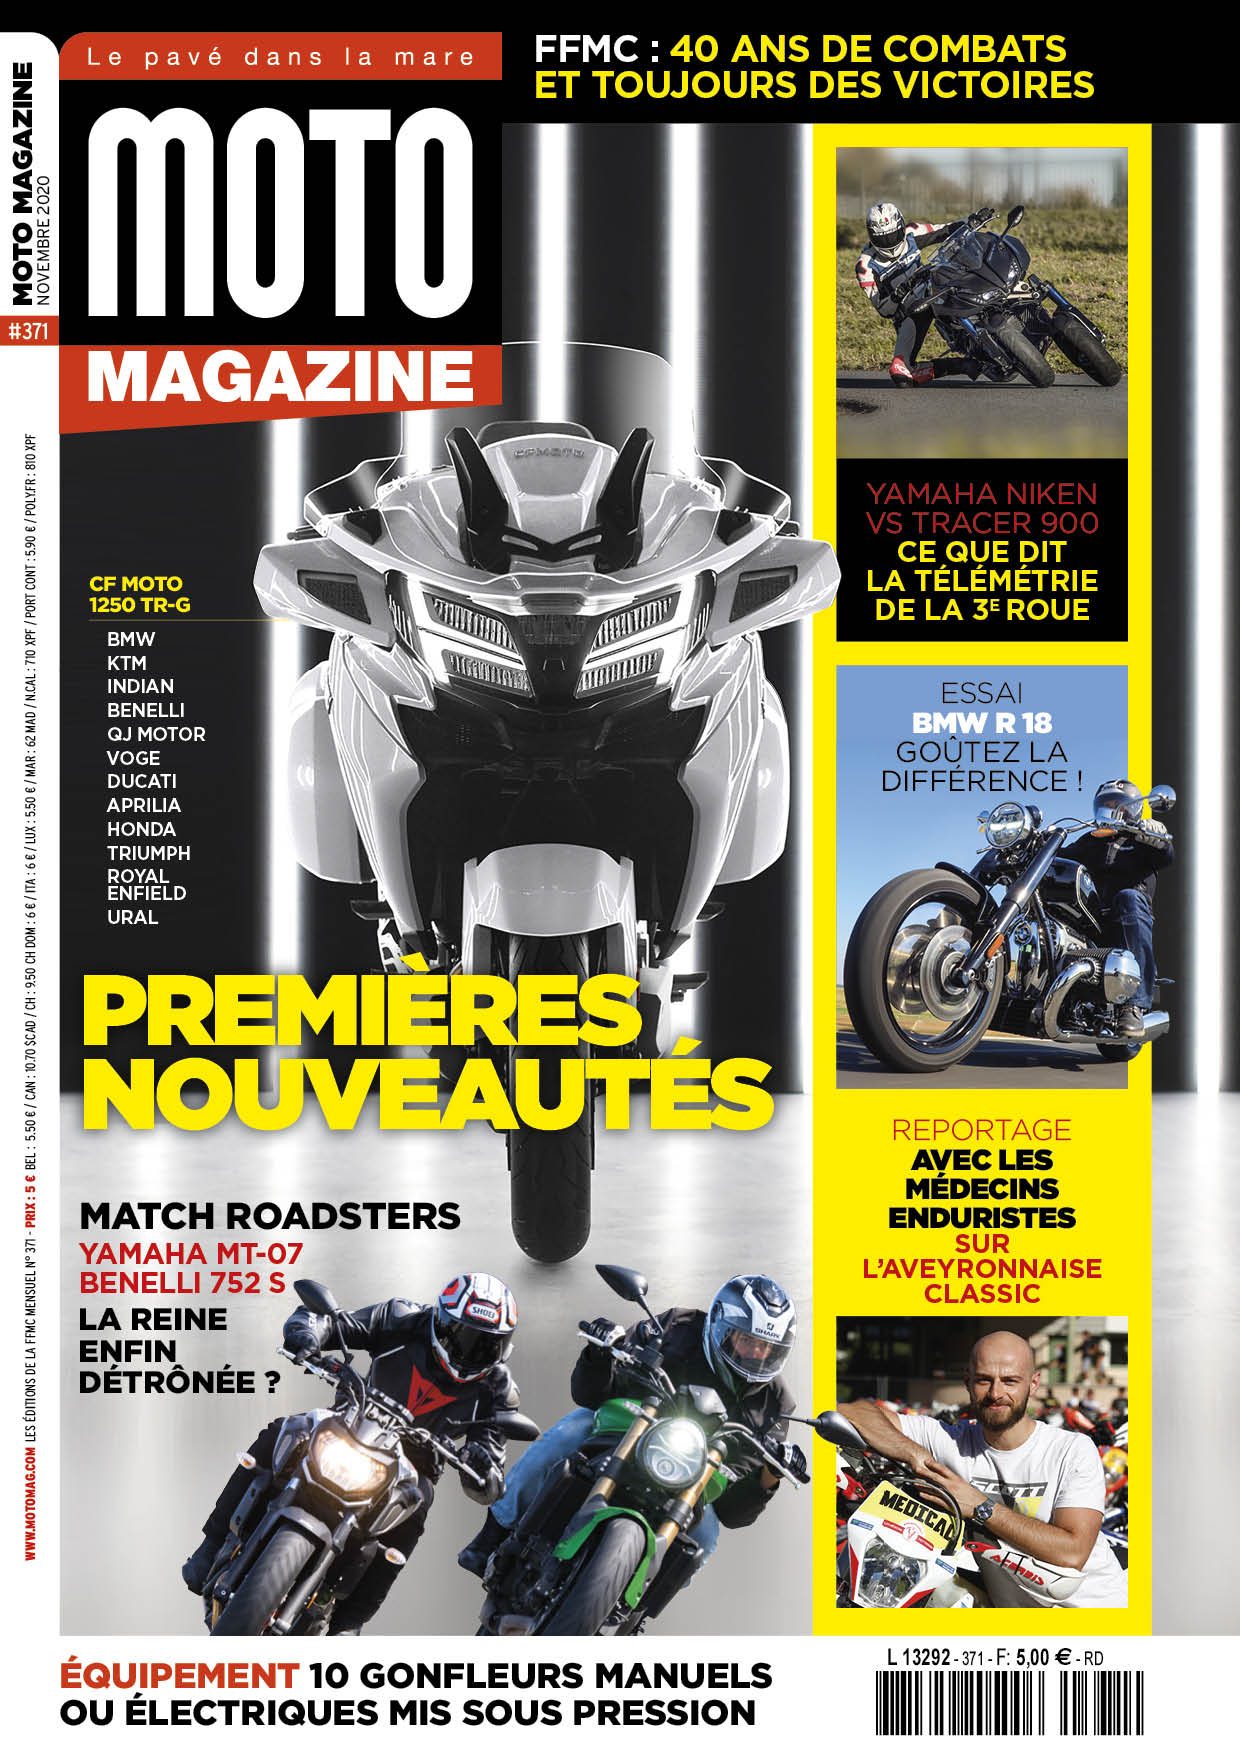 Le Moto Magazine 371 de novembre 2020 est en (...)